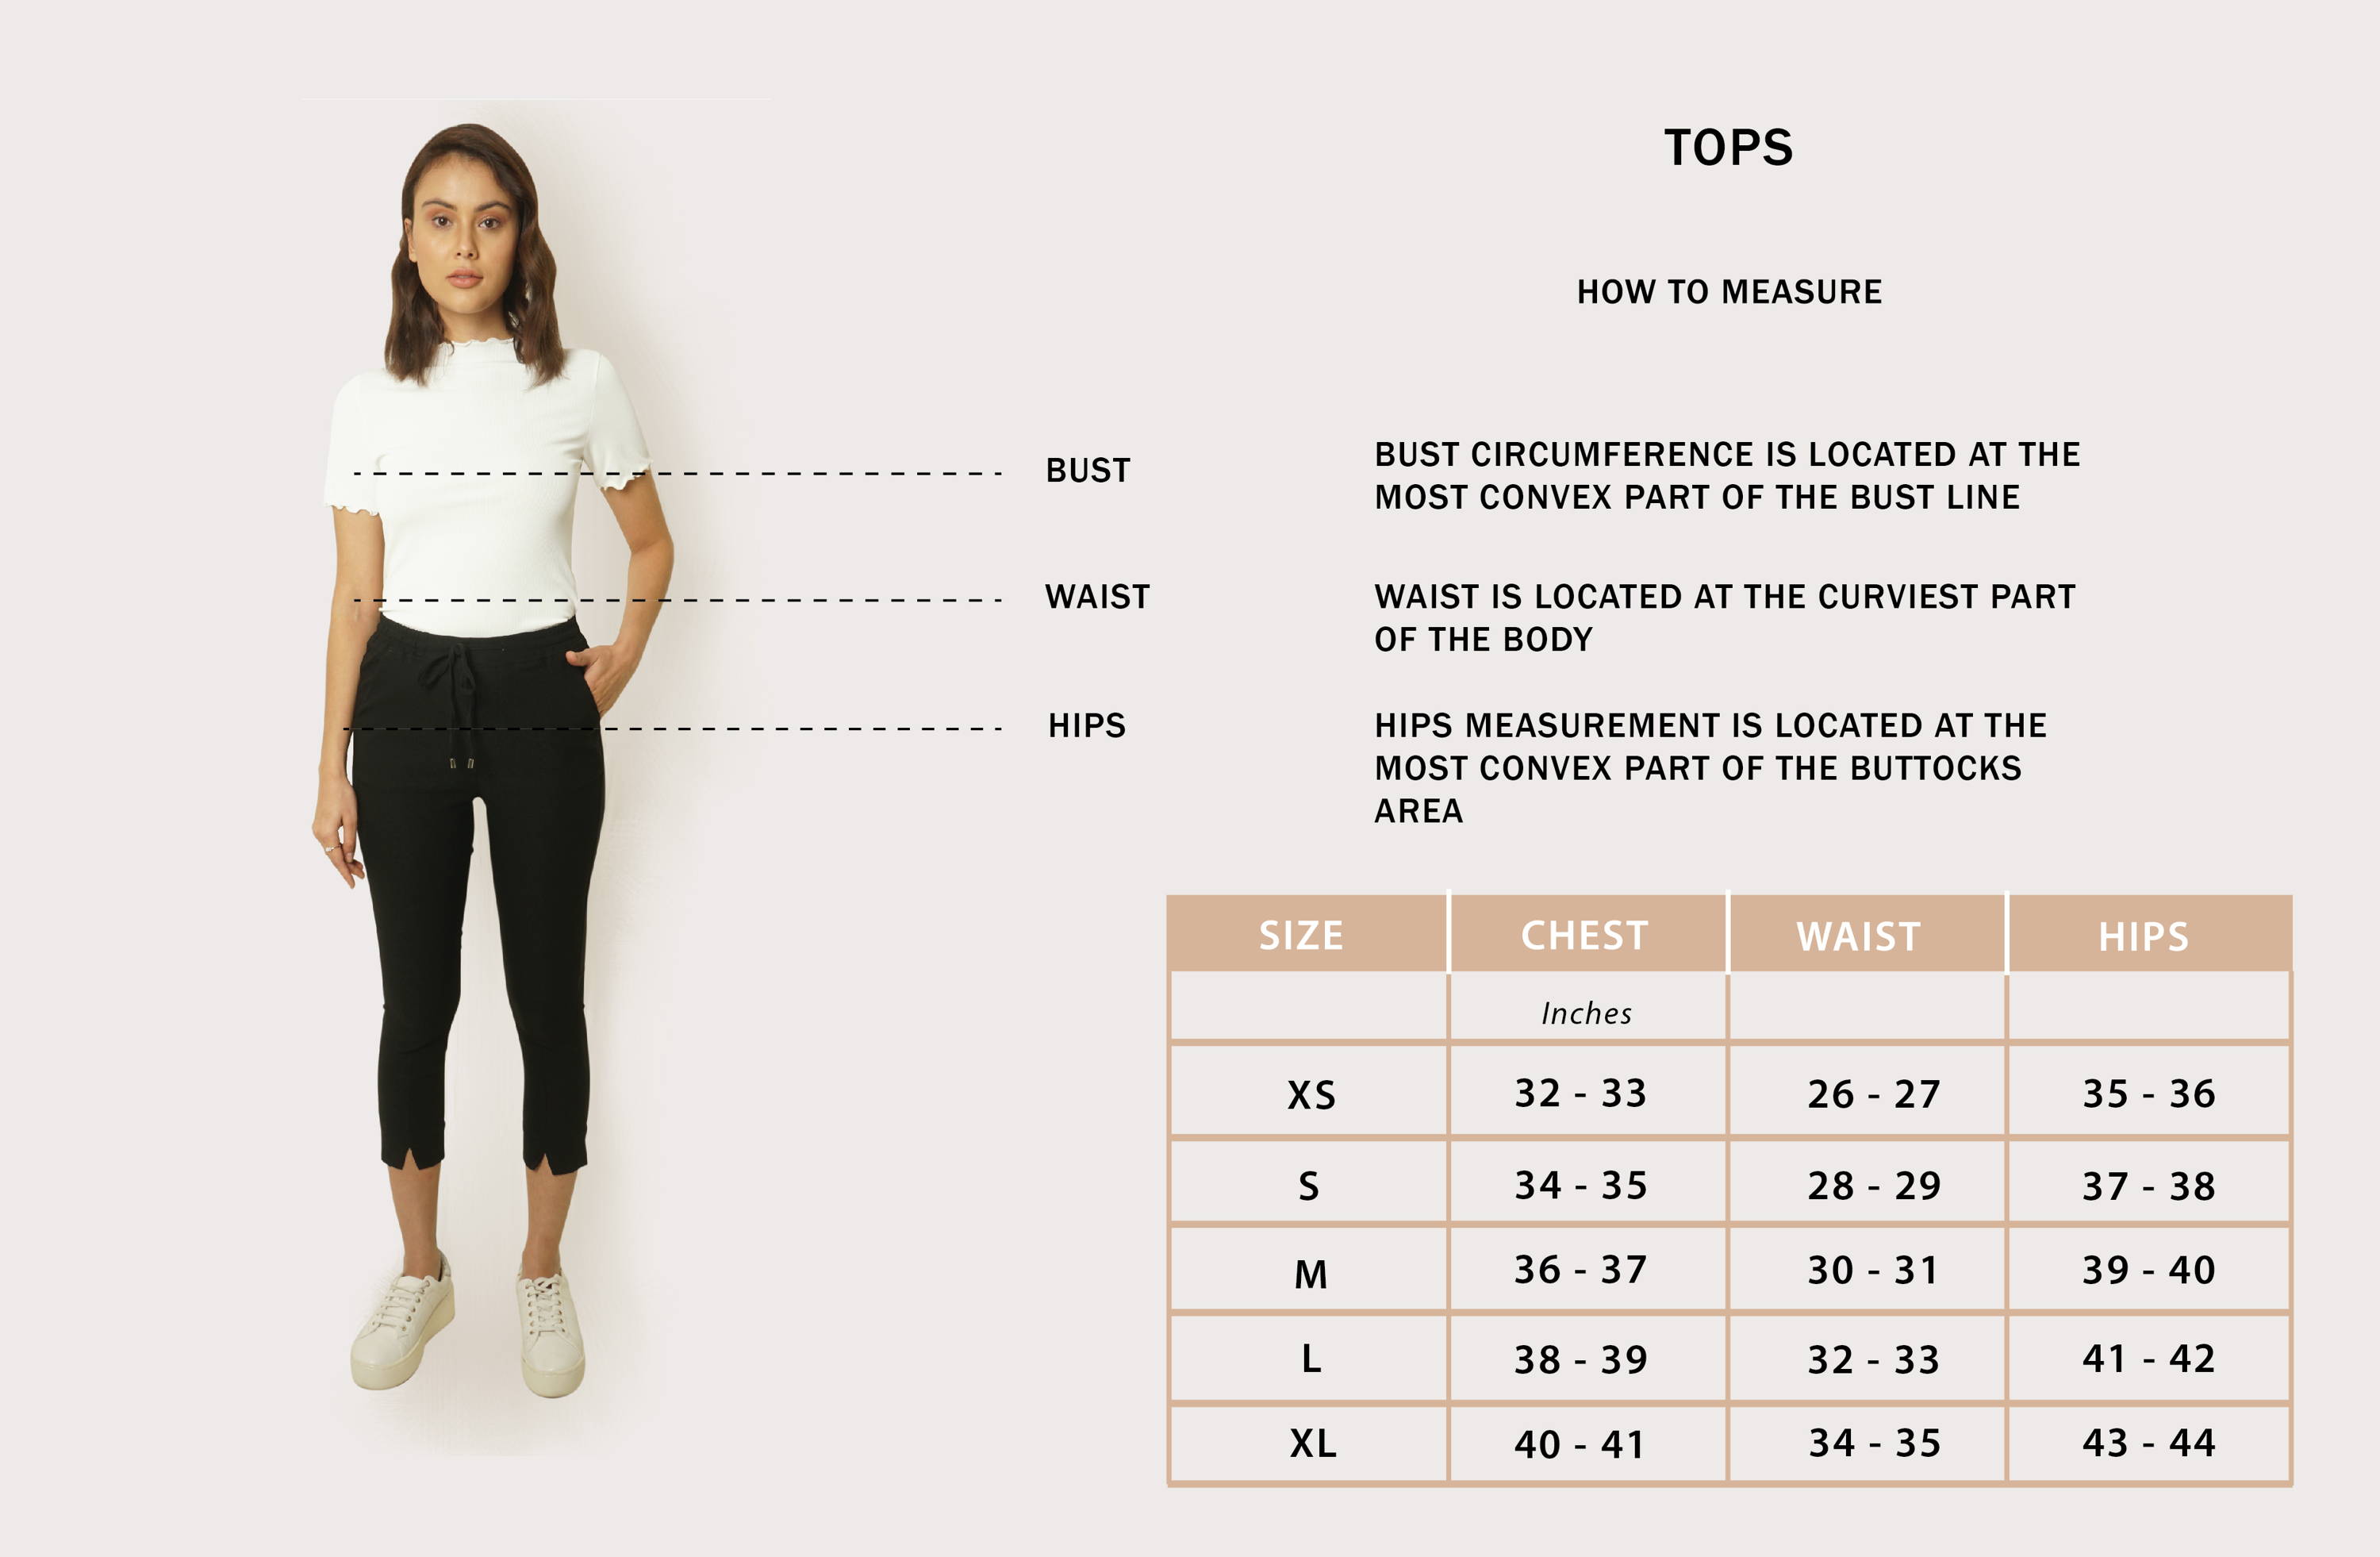 Dress size chart